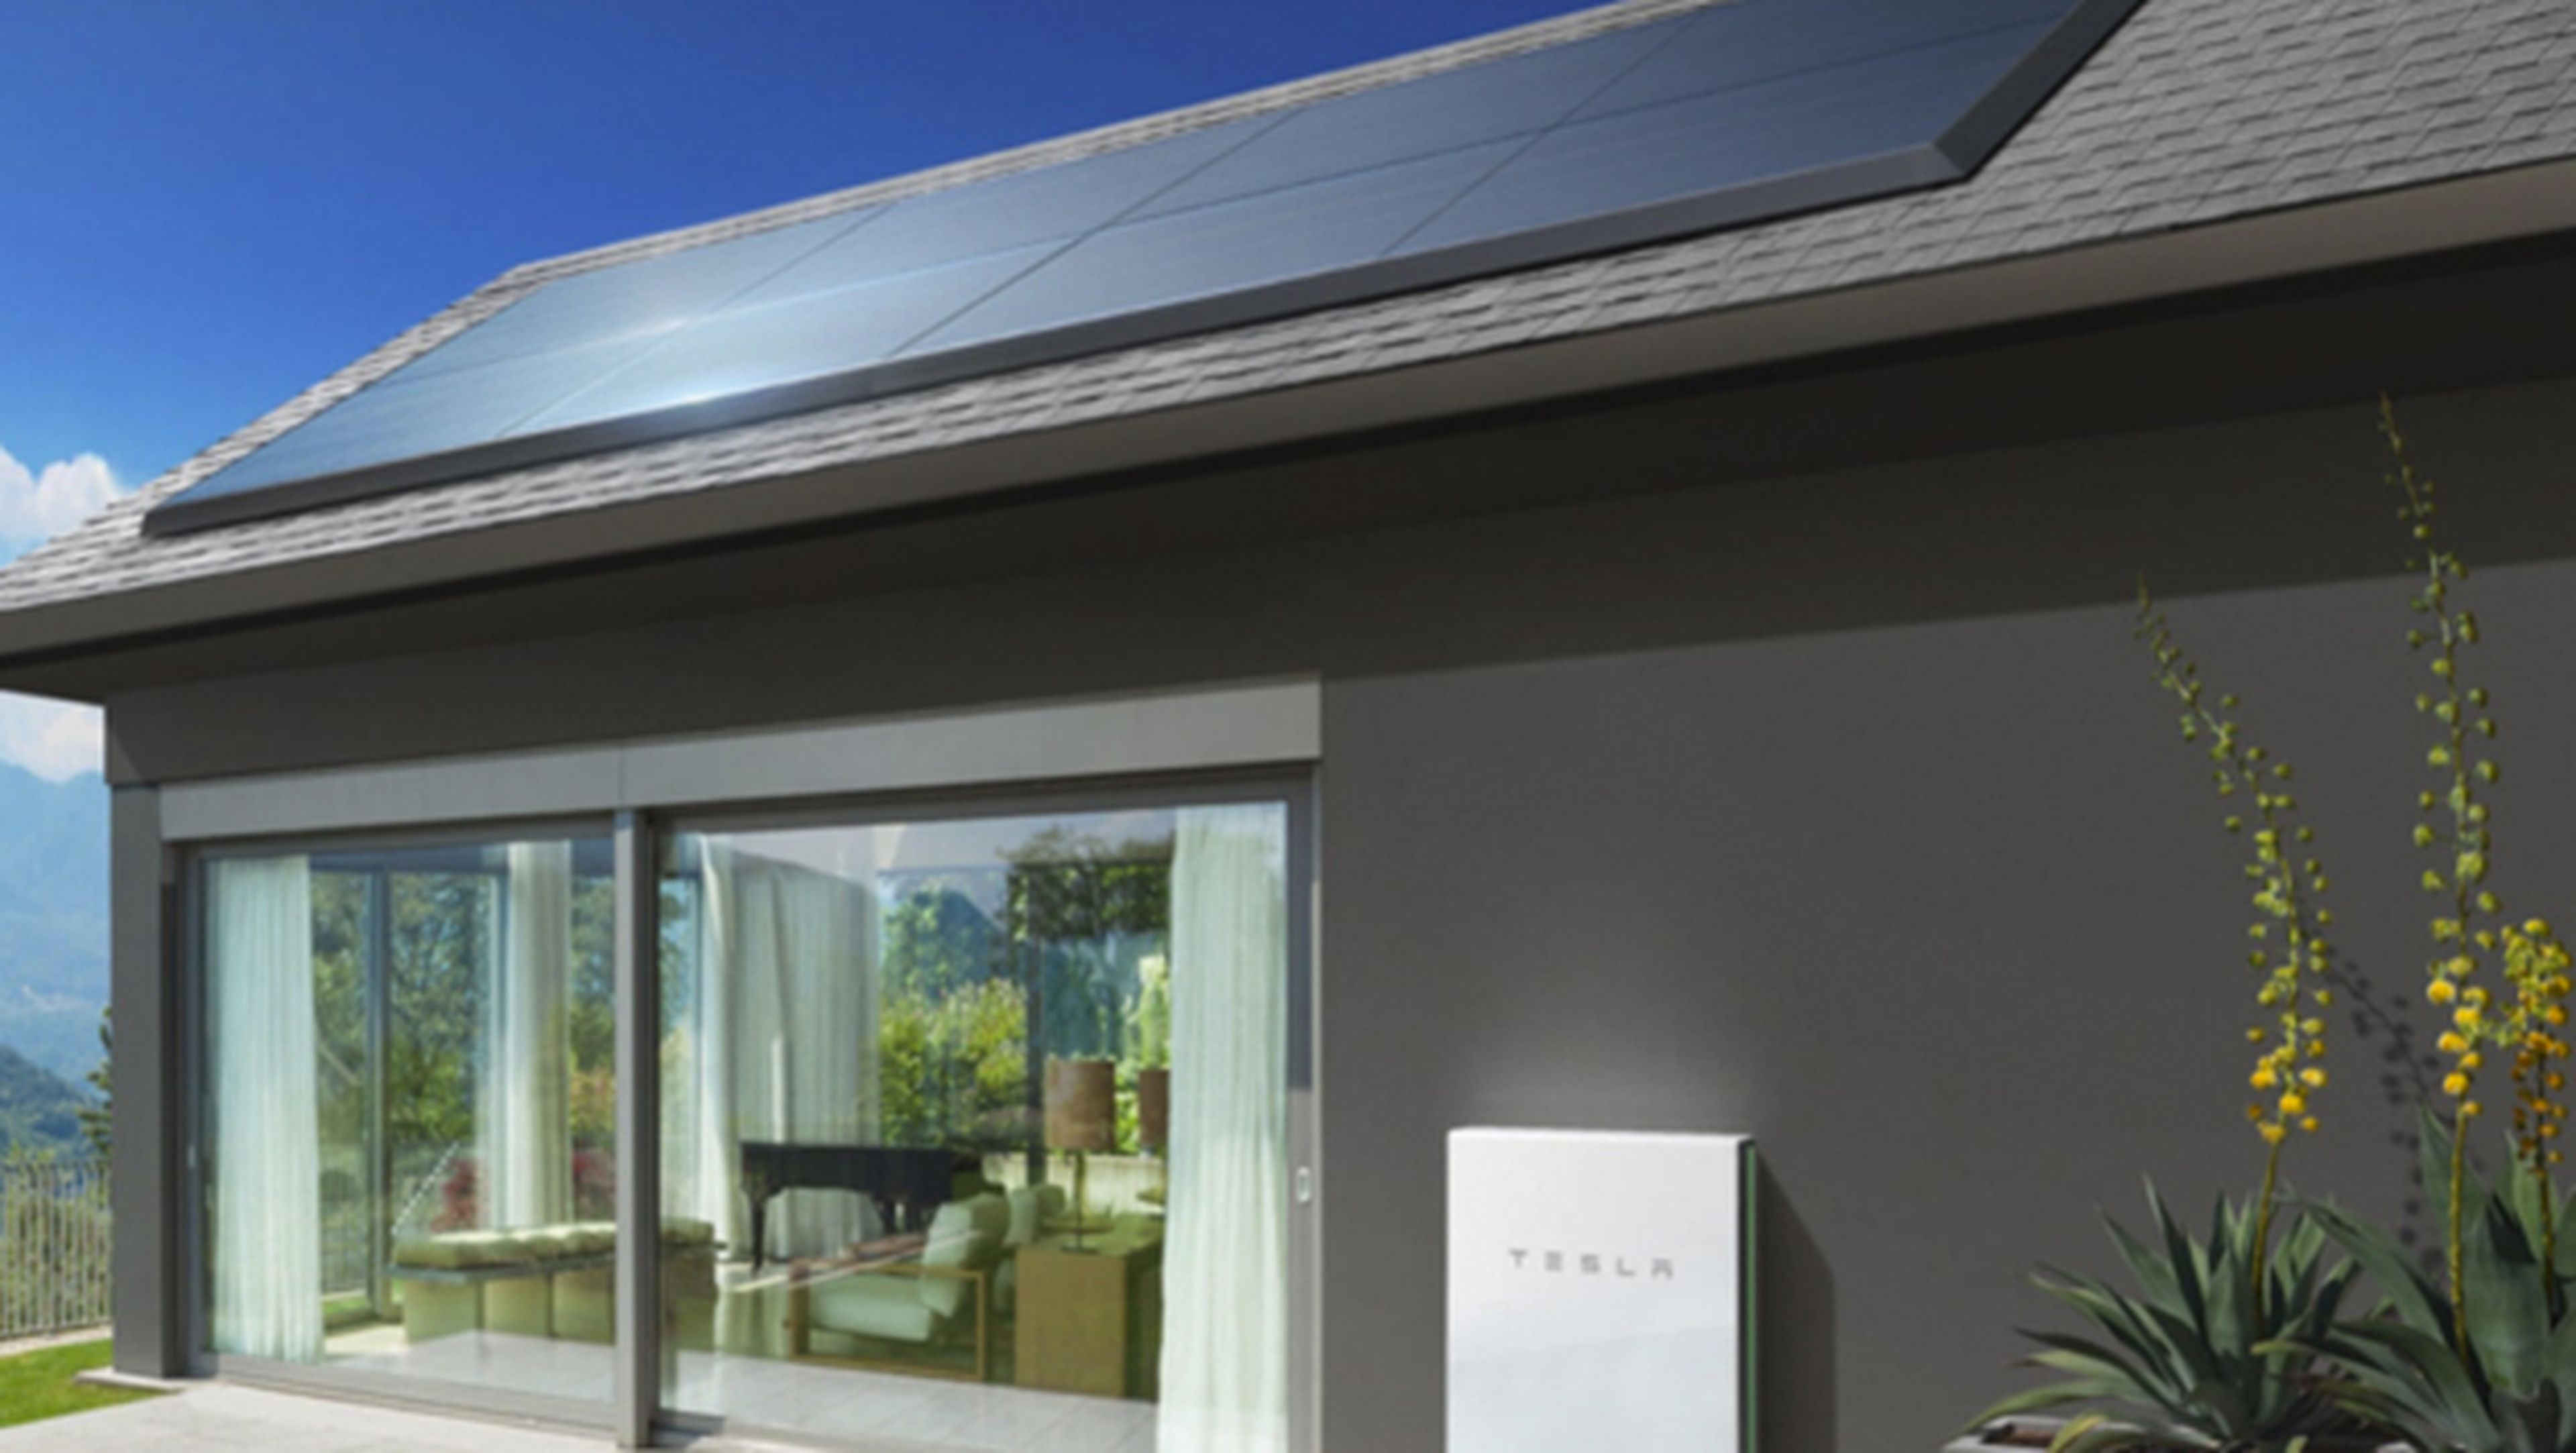 Los paneles solares de Tesla para cualquier tejado